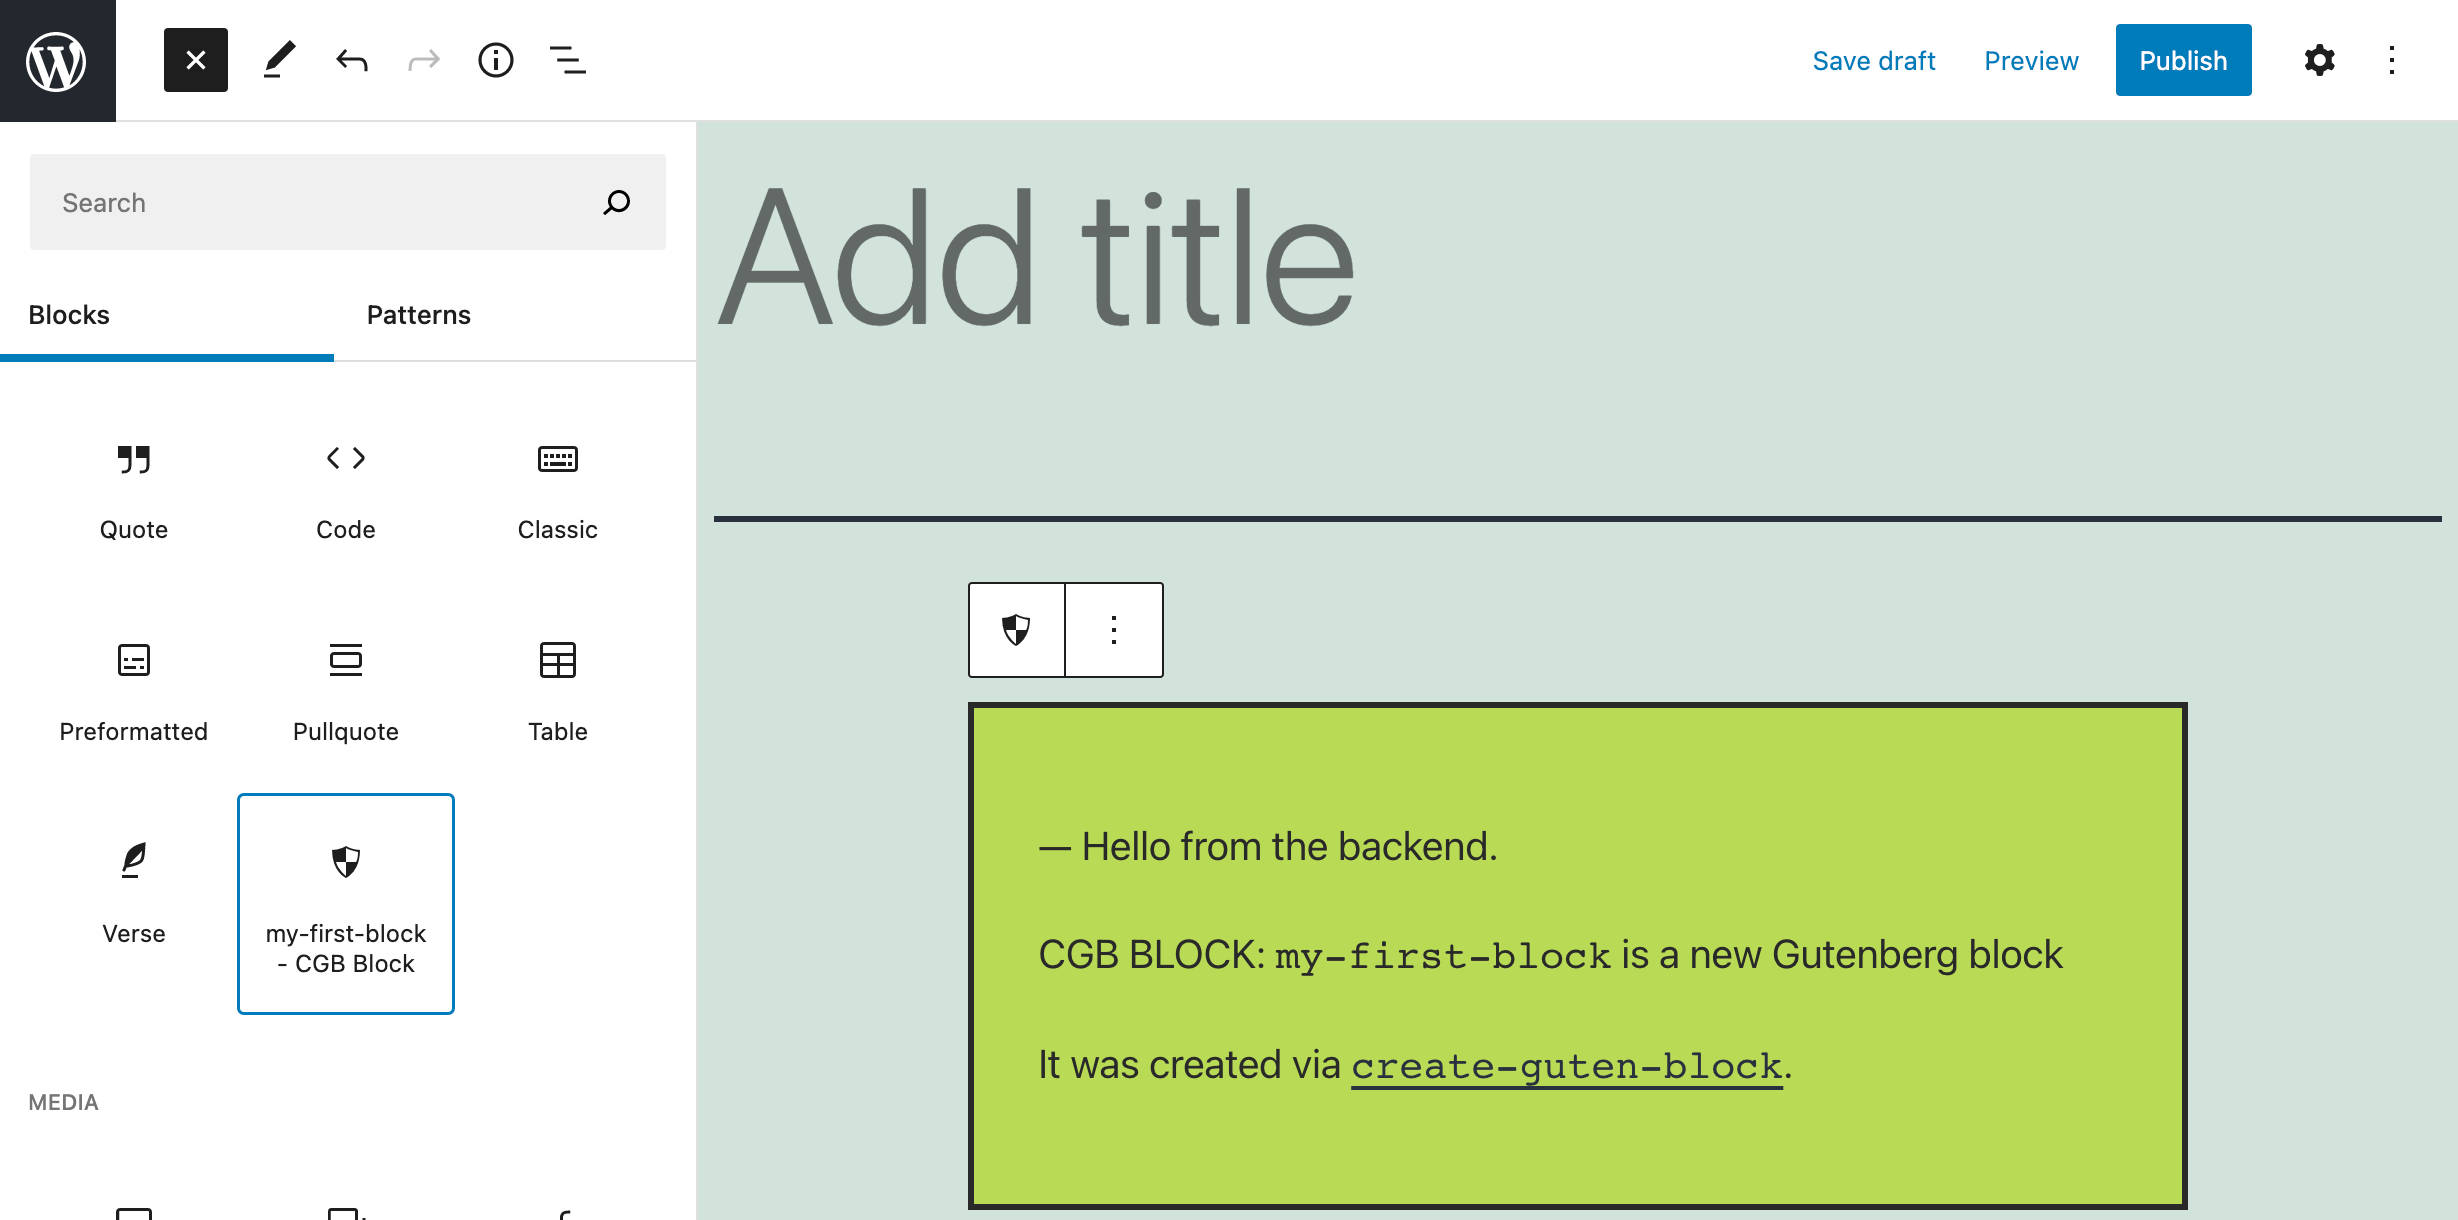 Ett nytt block som har skapats med create-guten-block.